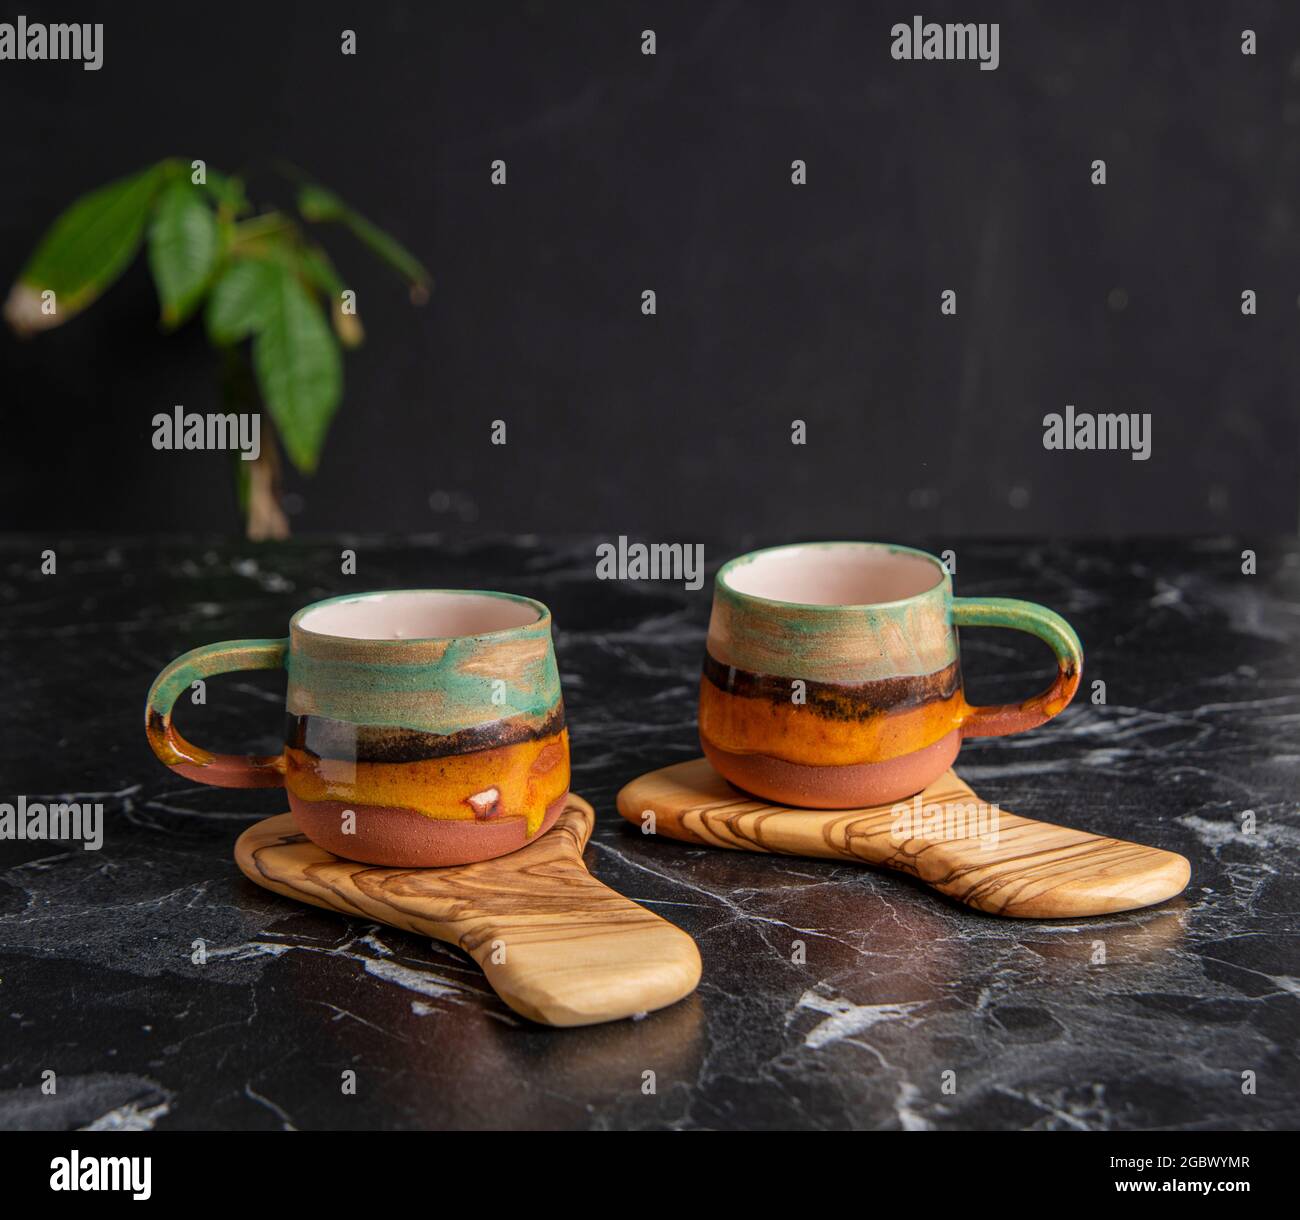 tazas de café coloridas con plato de madera Fotografía de stock - Alamy